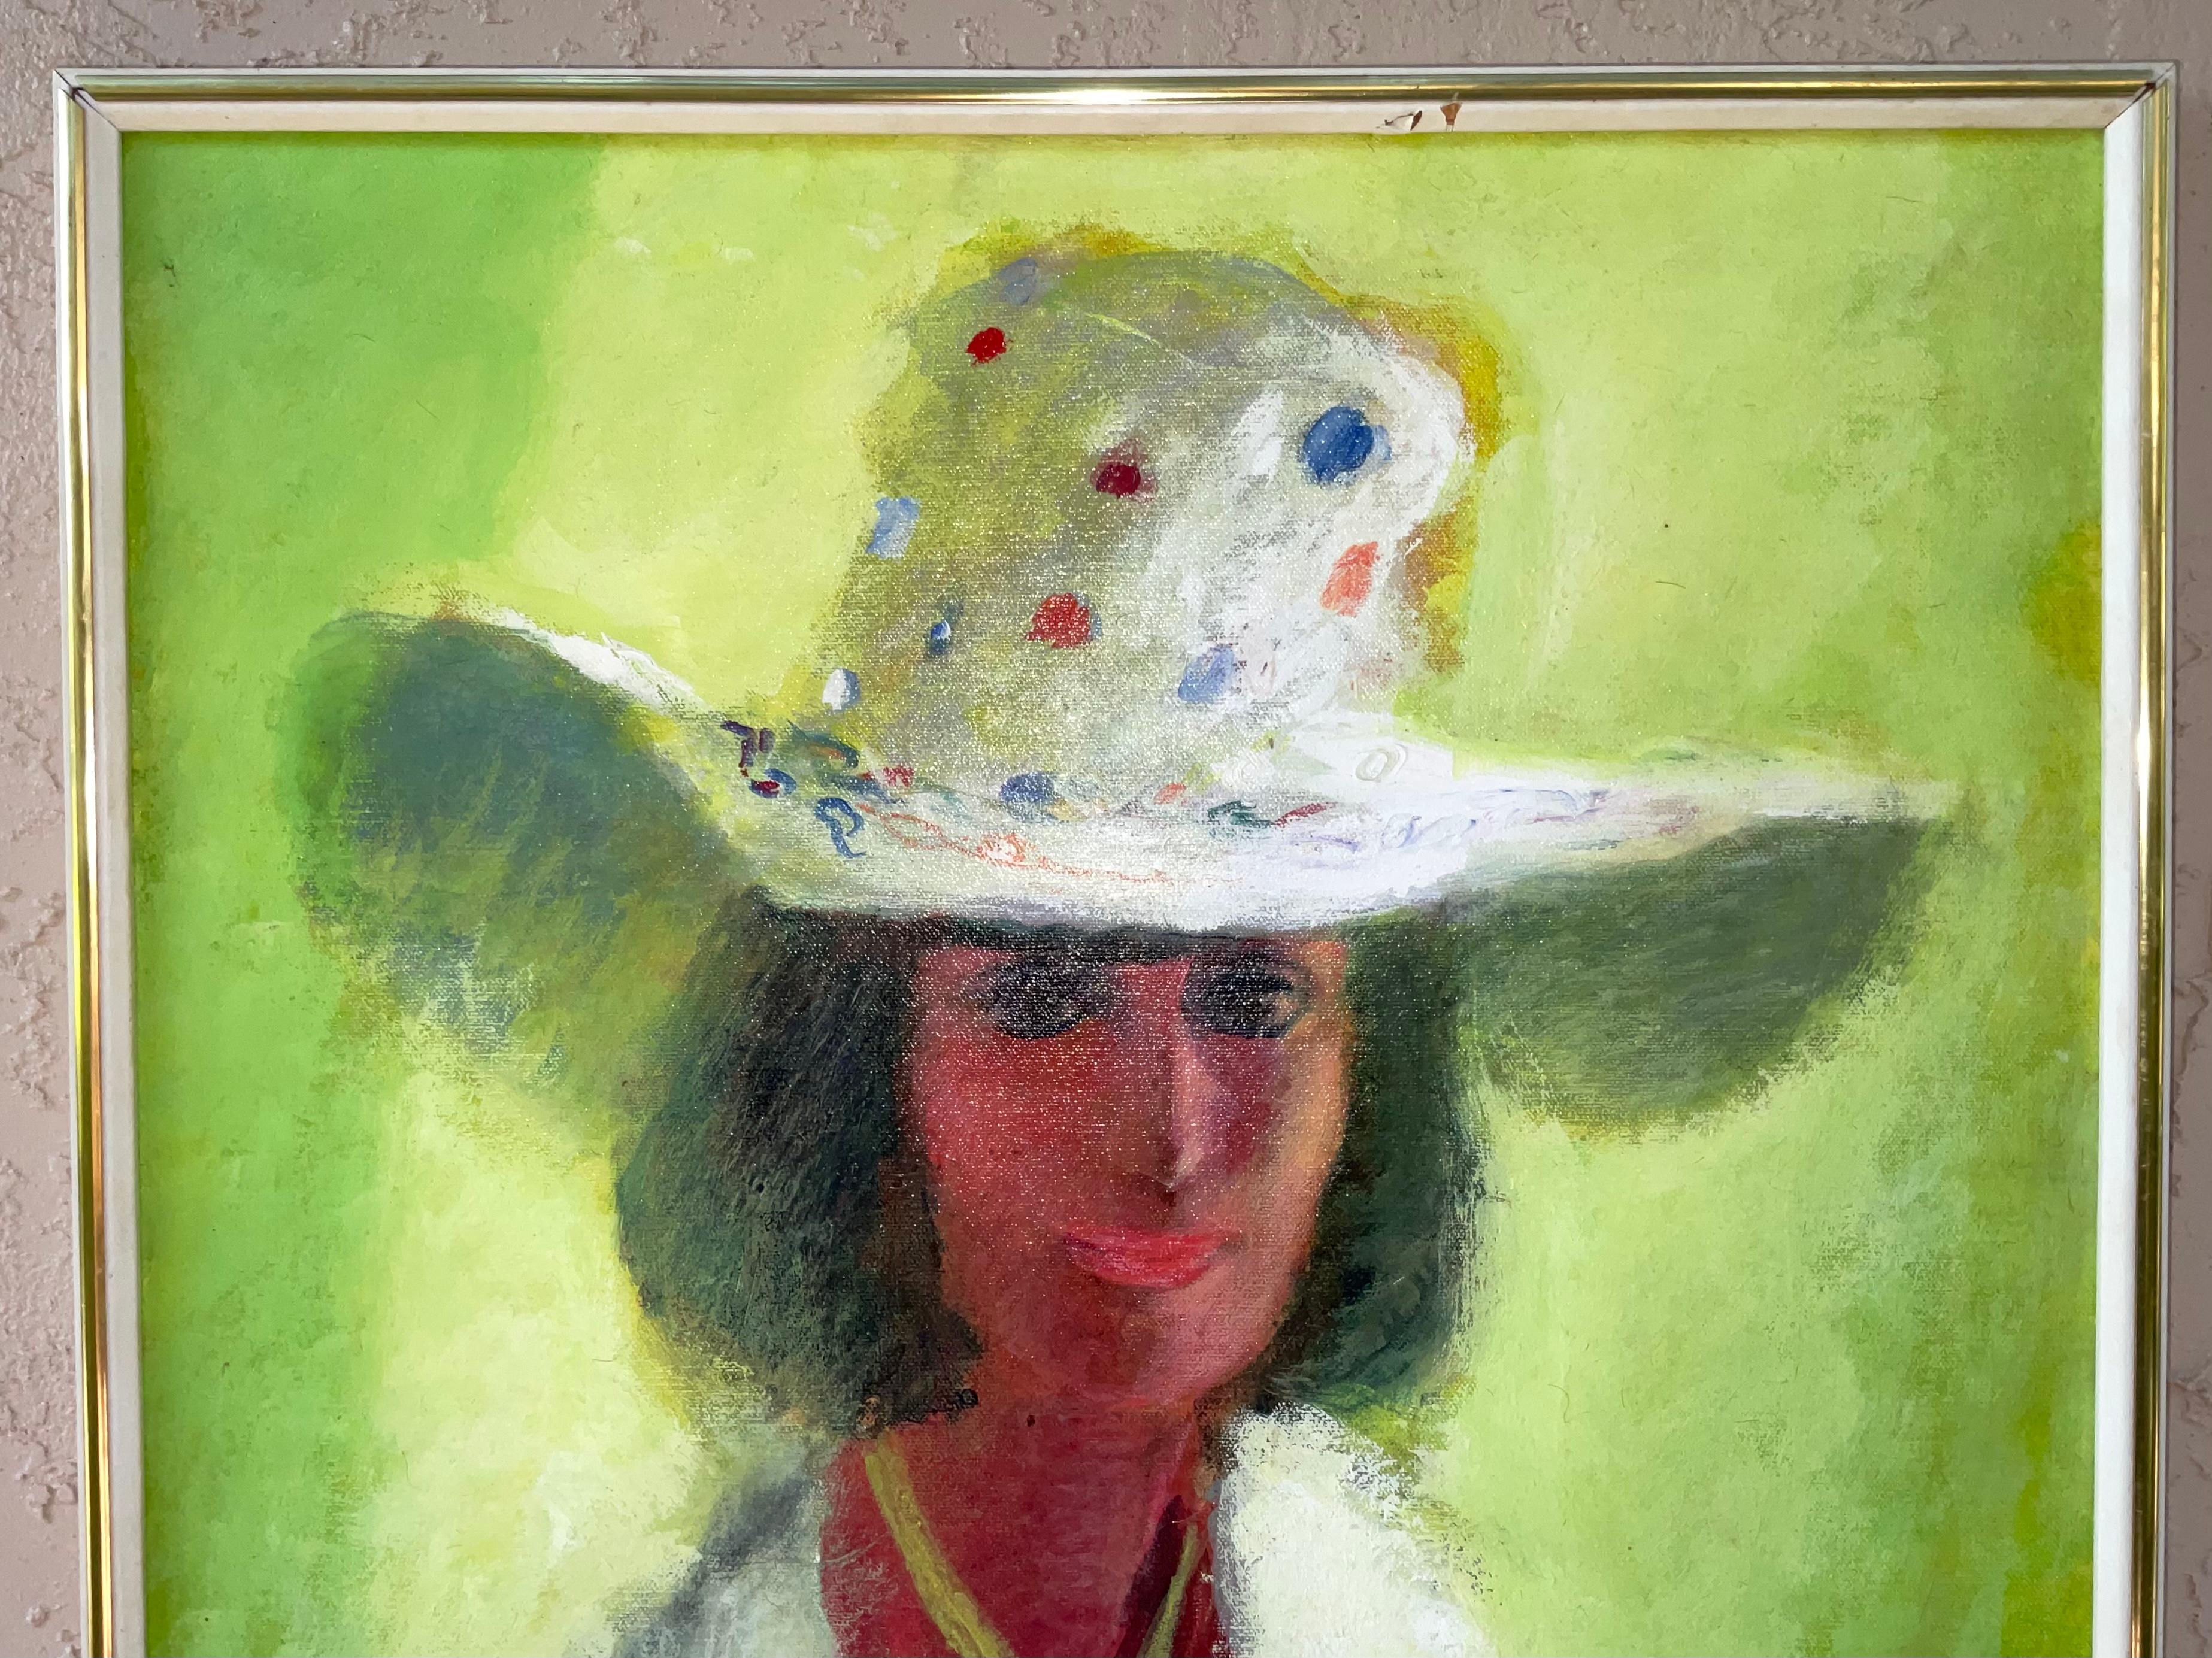 Vintage-Gemälde von eleganten Frau nach vorne schauen anmutig, mit geheimnisvollen Blick, schöne Farben Kombinationen, große dekorative Malerei.
Schild im Hintergrund.